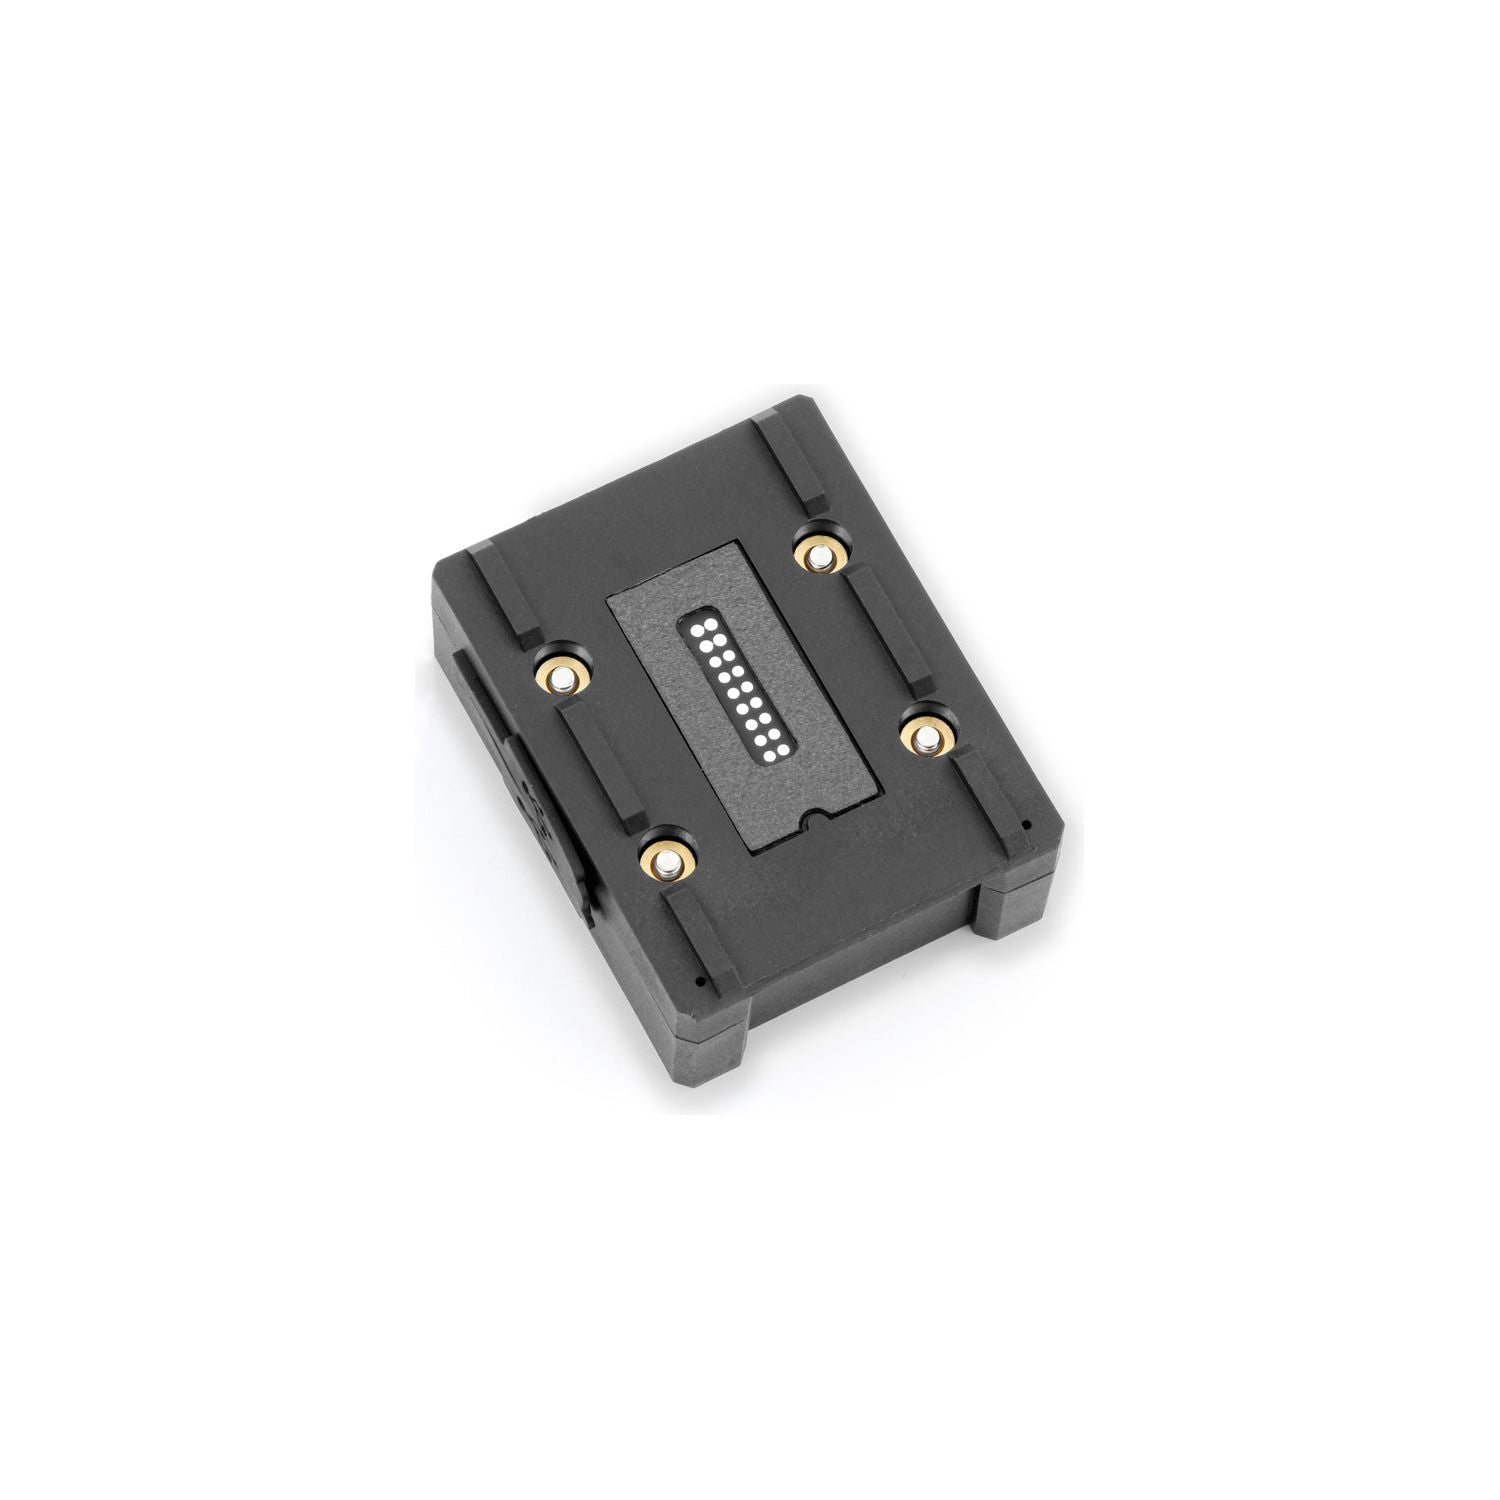 Wunderlich boîtier de chargement USB (21177-002) - EdTools